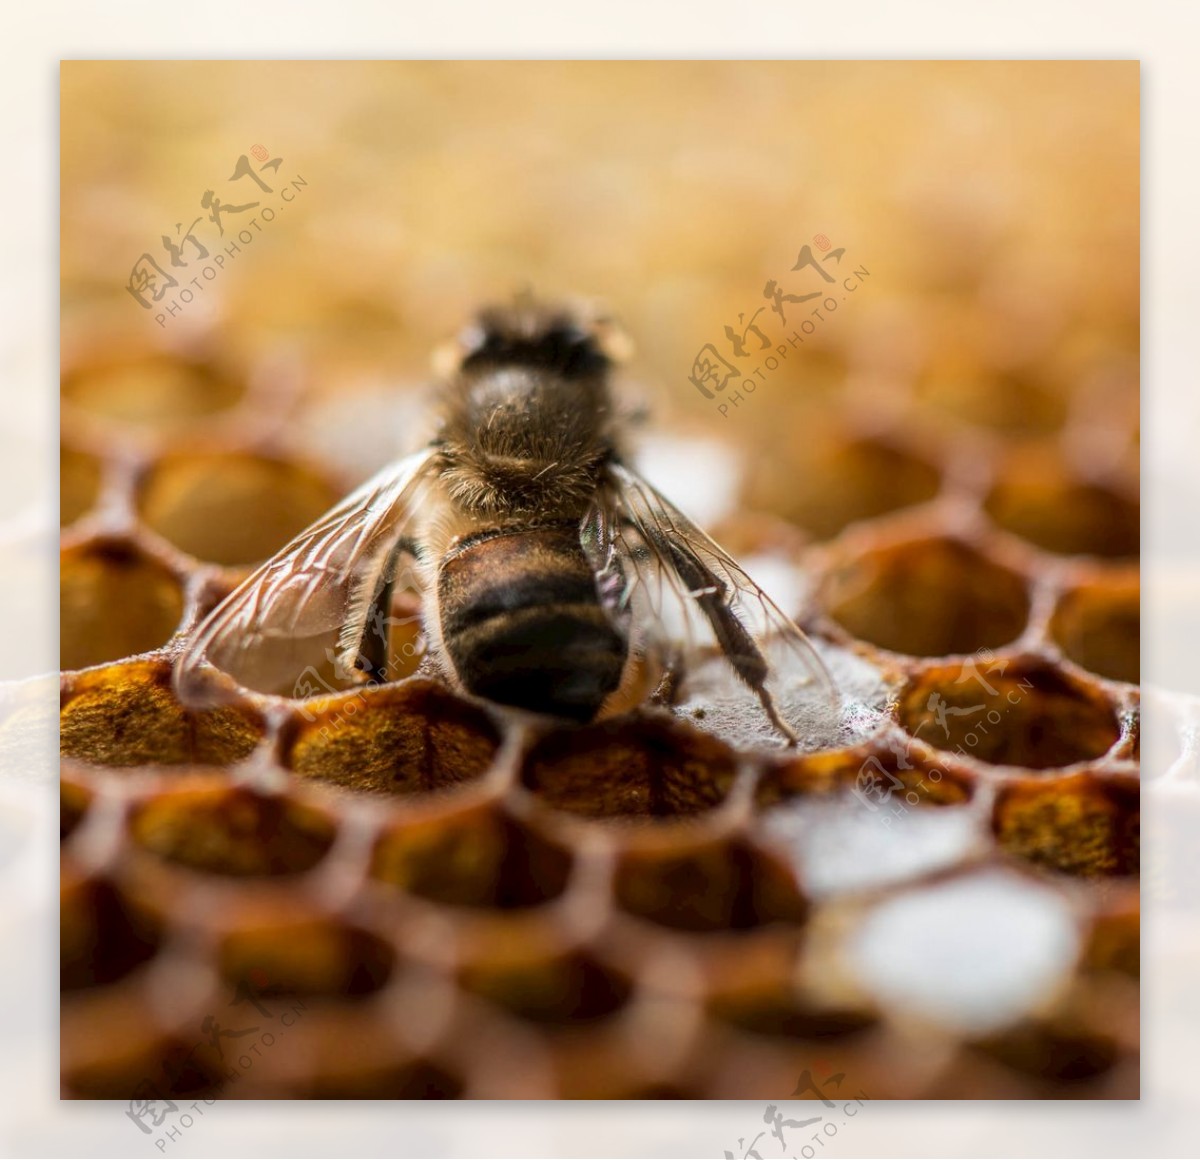 蜂蜡蜂窝蜂蜜